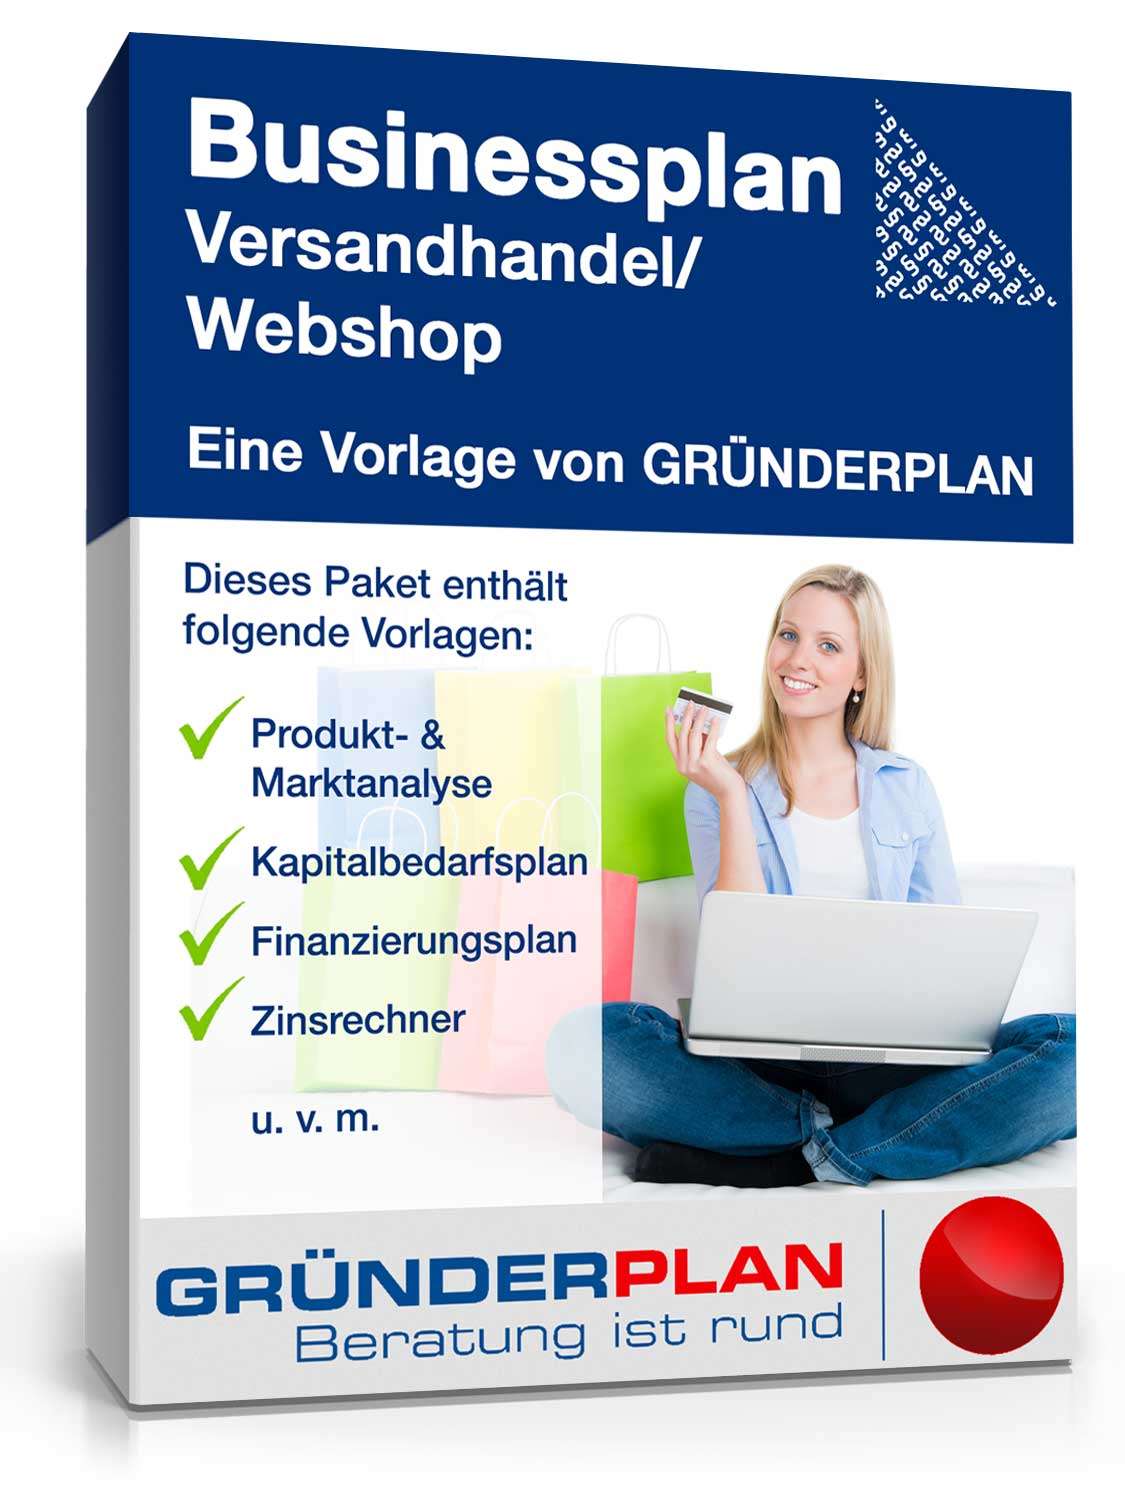 Hauptbild des Produkts: Businessplan Versandhandel/Webshop von Gründerplan